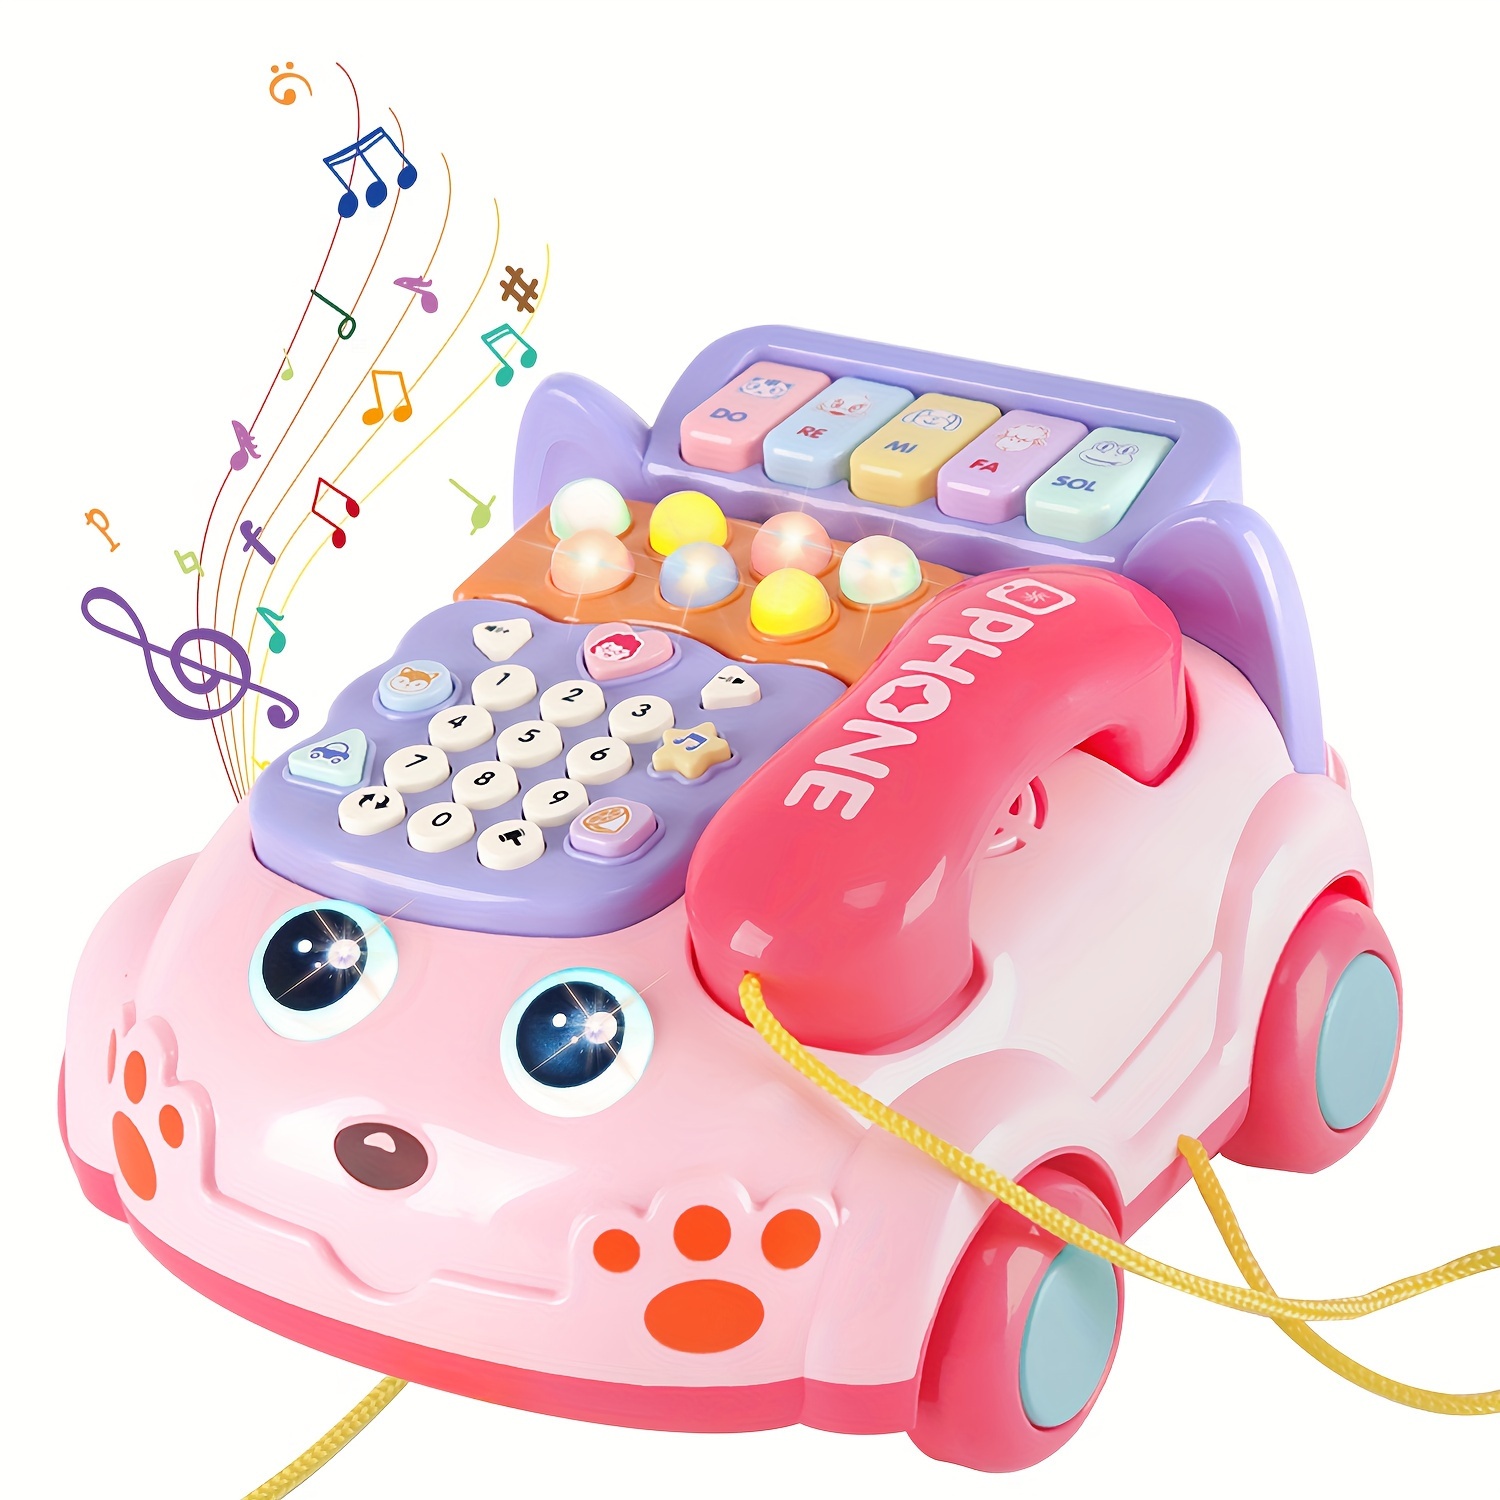 Juguetes de teléfono móvil Montessori para niños, juguetes de piano musical  para niña, juguetes de teléfono móvil para niños de 2 a 4 años, de 0 a 12